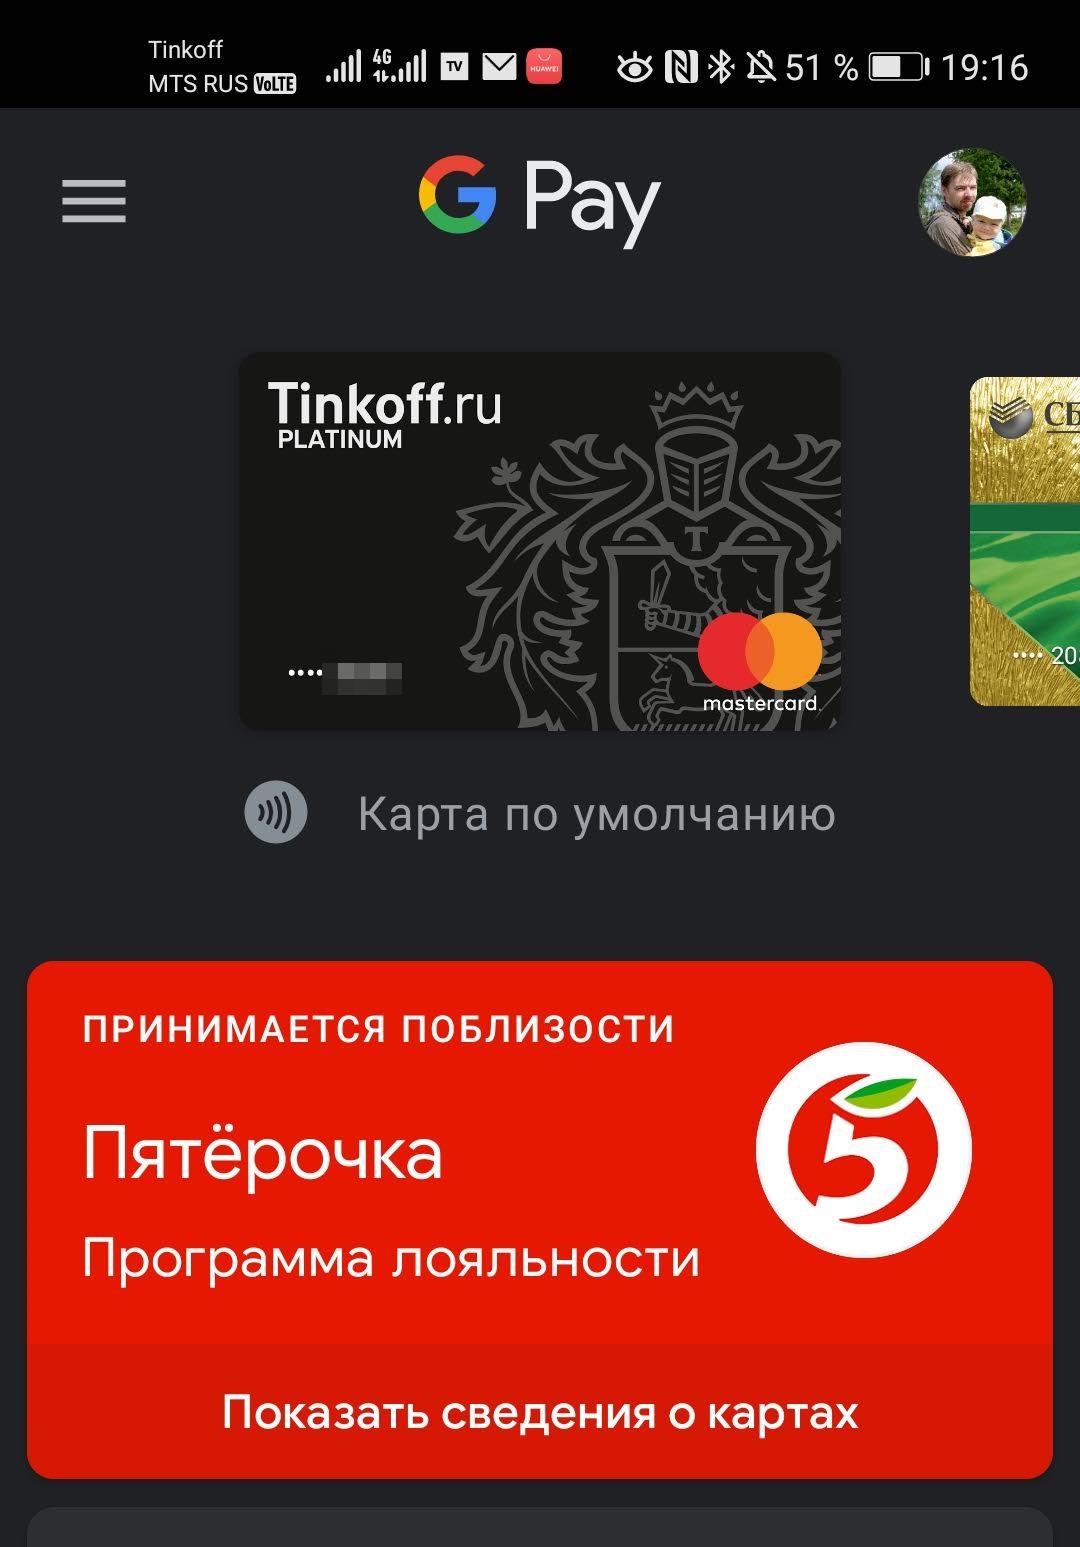 Приложения для оплаты телефоном в россии. Оплата в приложении. Приложение для оплаты телефоном. Приложения для оплаты через NFC. Программа для оплаты приложений.